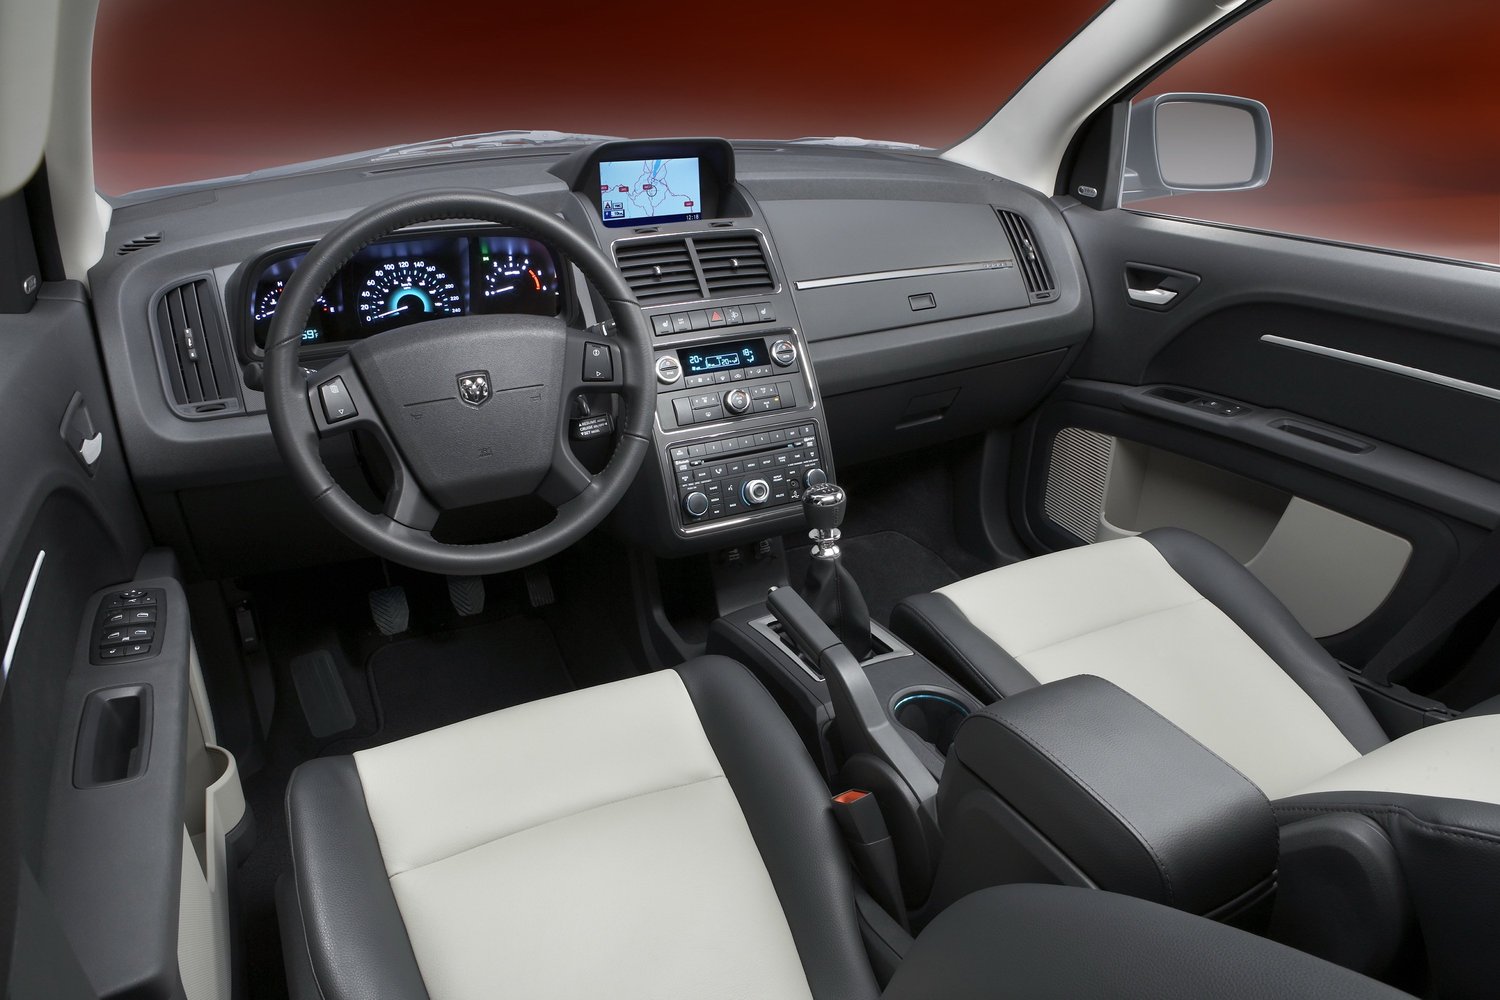 кроссовер Dodge Journey 2008 - 2016г выпуска модификация 3.5 AT (235 л.с.)